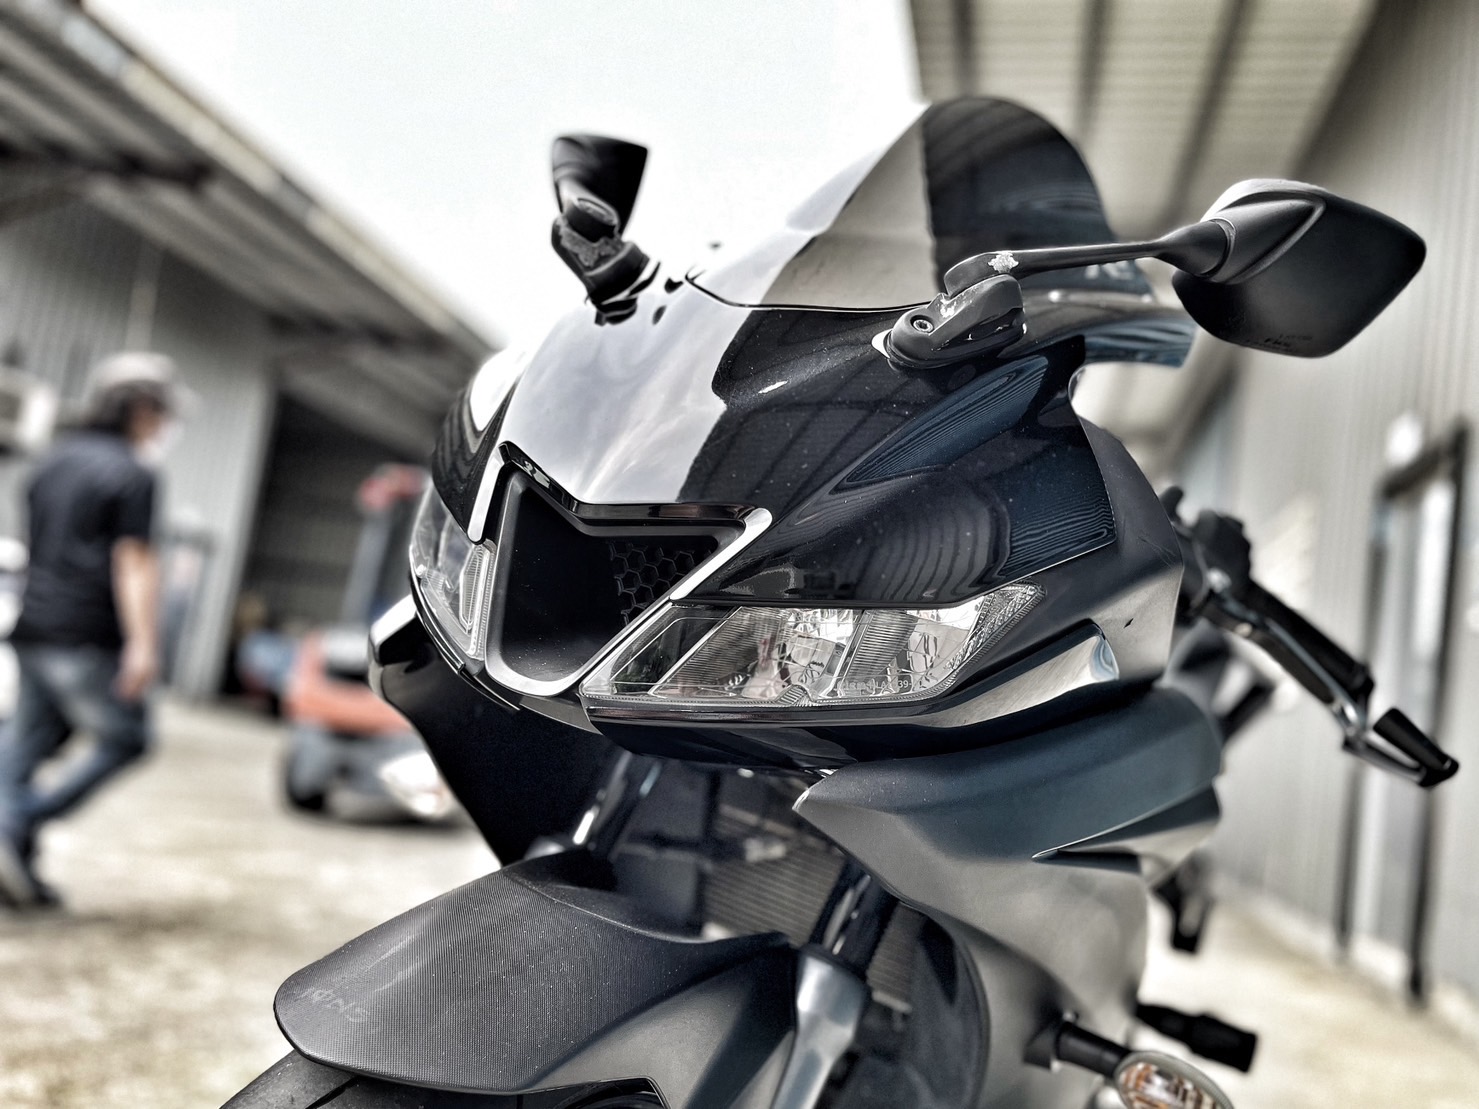 【小資族二手重機買賣】YAMAHA YZF-R15 - 「Webike-摩托車市」 ABS版 黑色系 基本改裝 無事故 小資族二手重機買賣